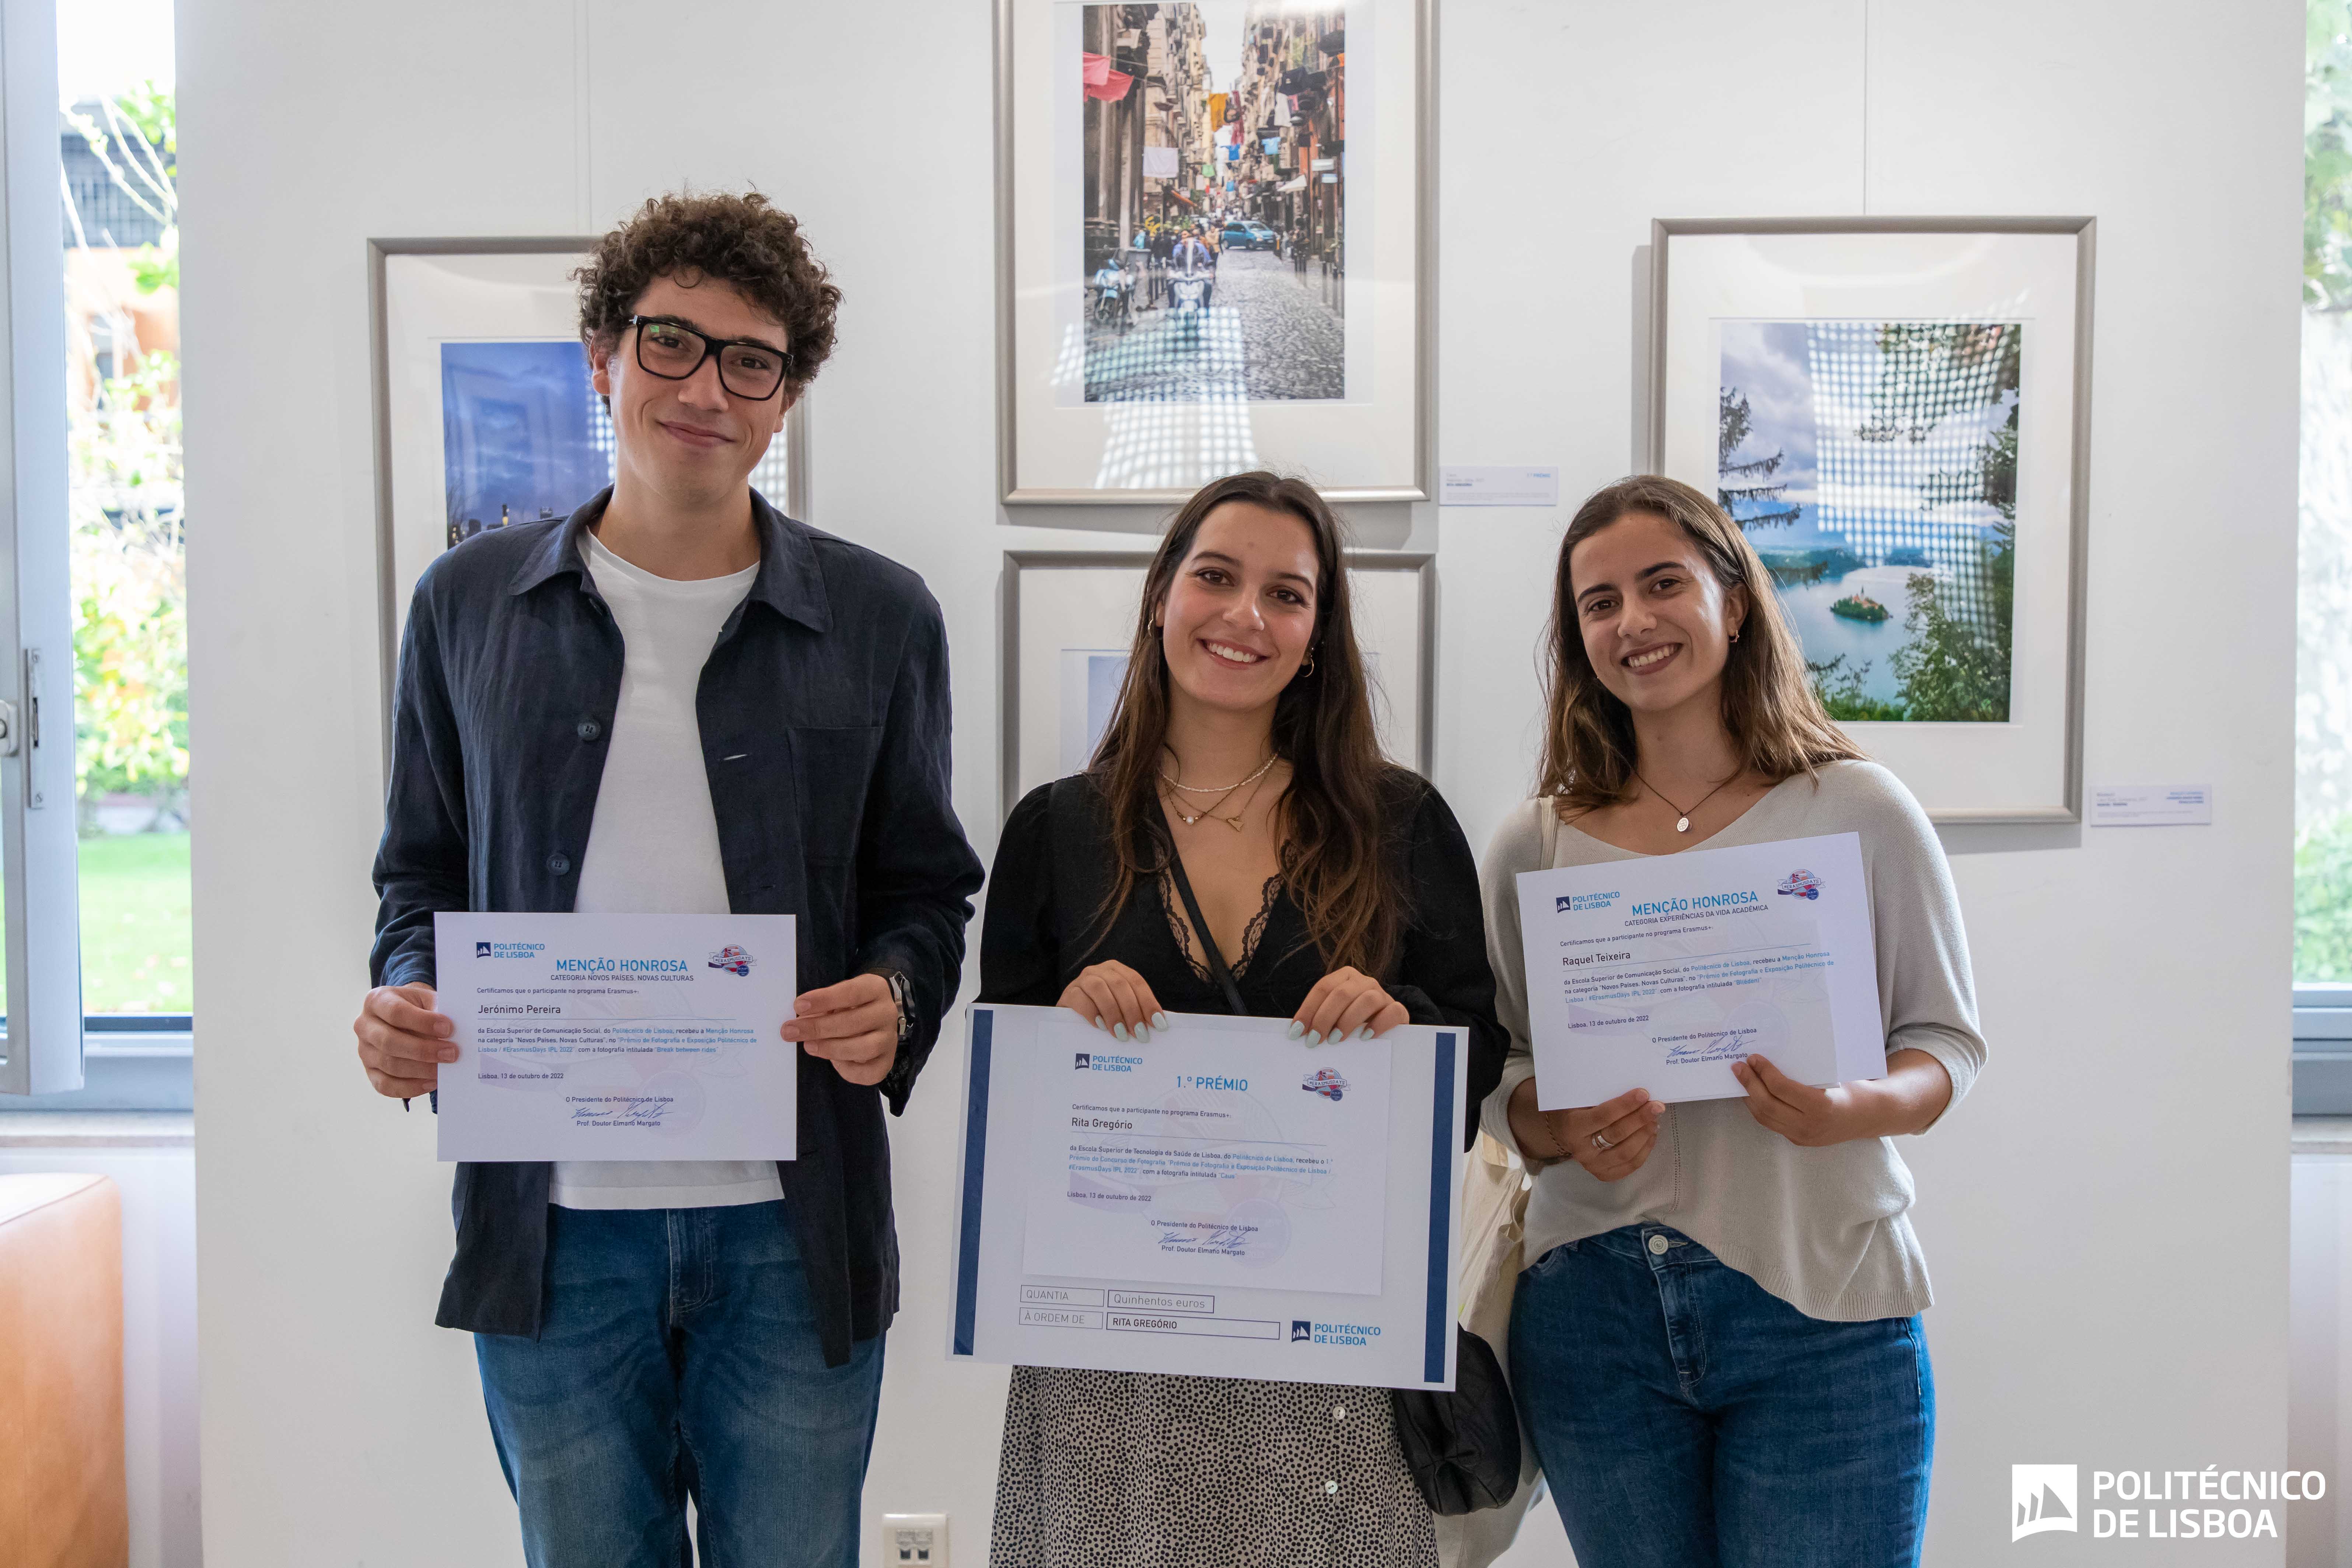 aluna vencedora e alunos com duas menções honrosas no Concurso Fotografia ErasmusDays